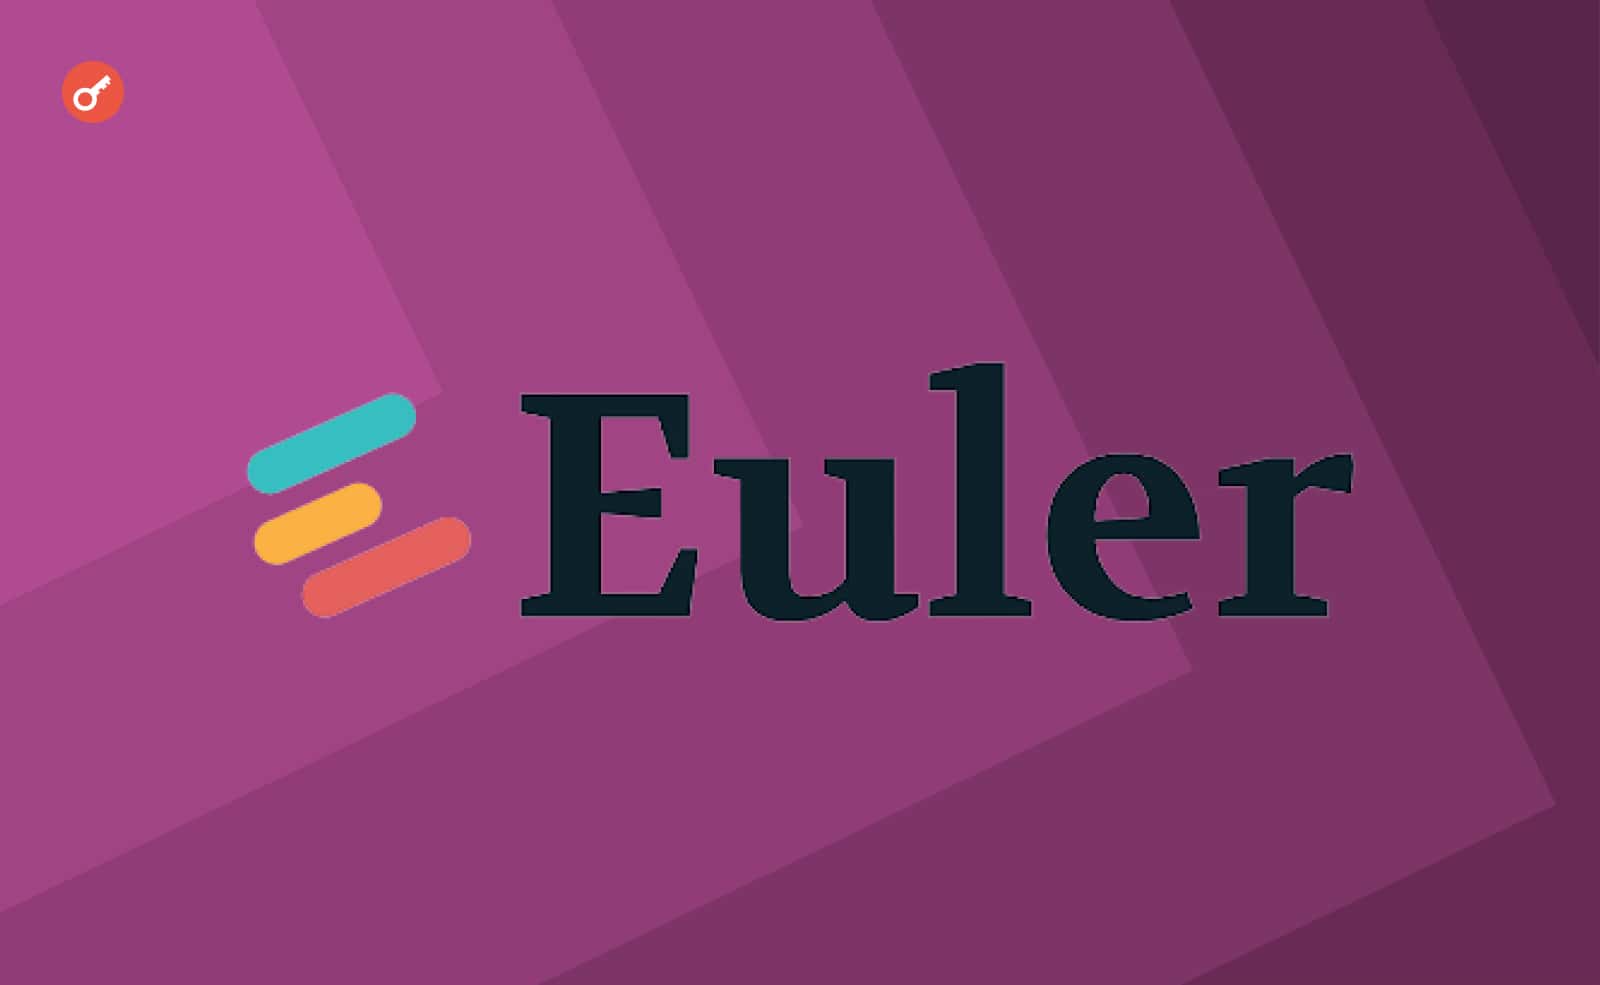 Euler Finance запропонували $1 млн за допомогу в затриманні хакера. Головний колаж новини.